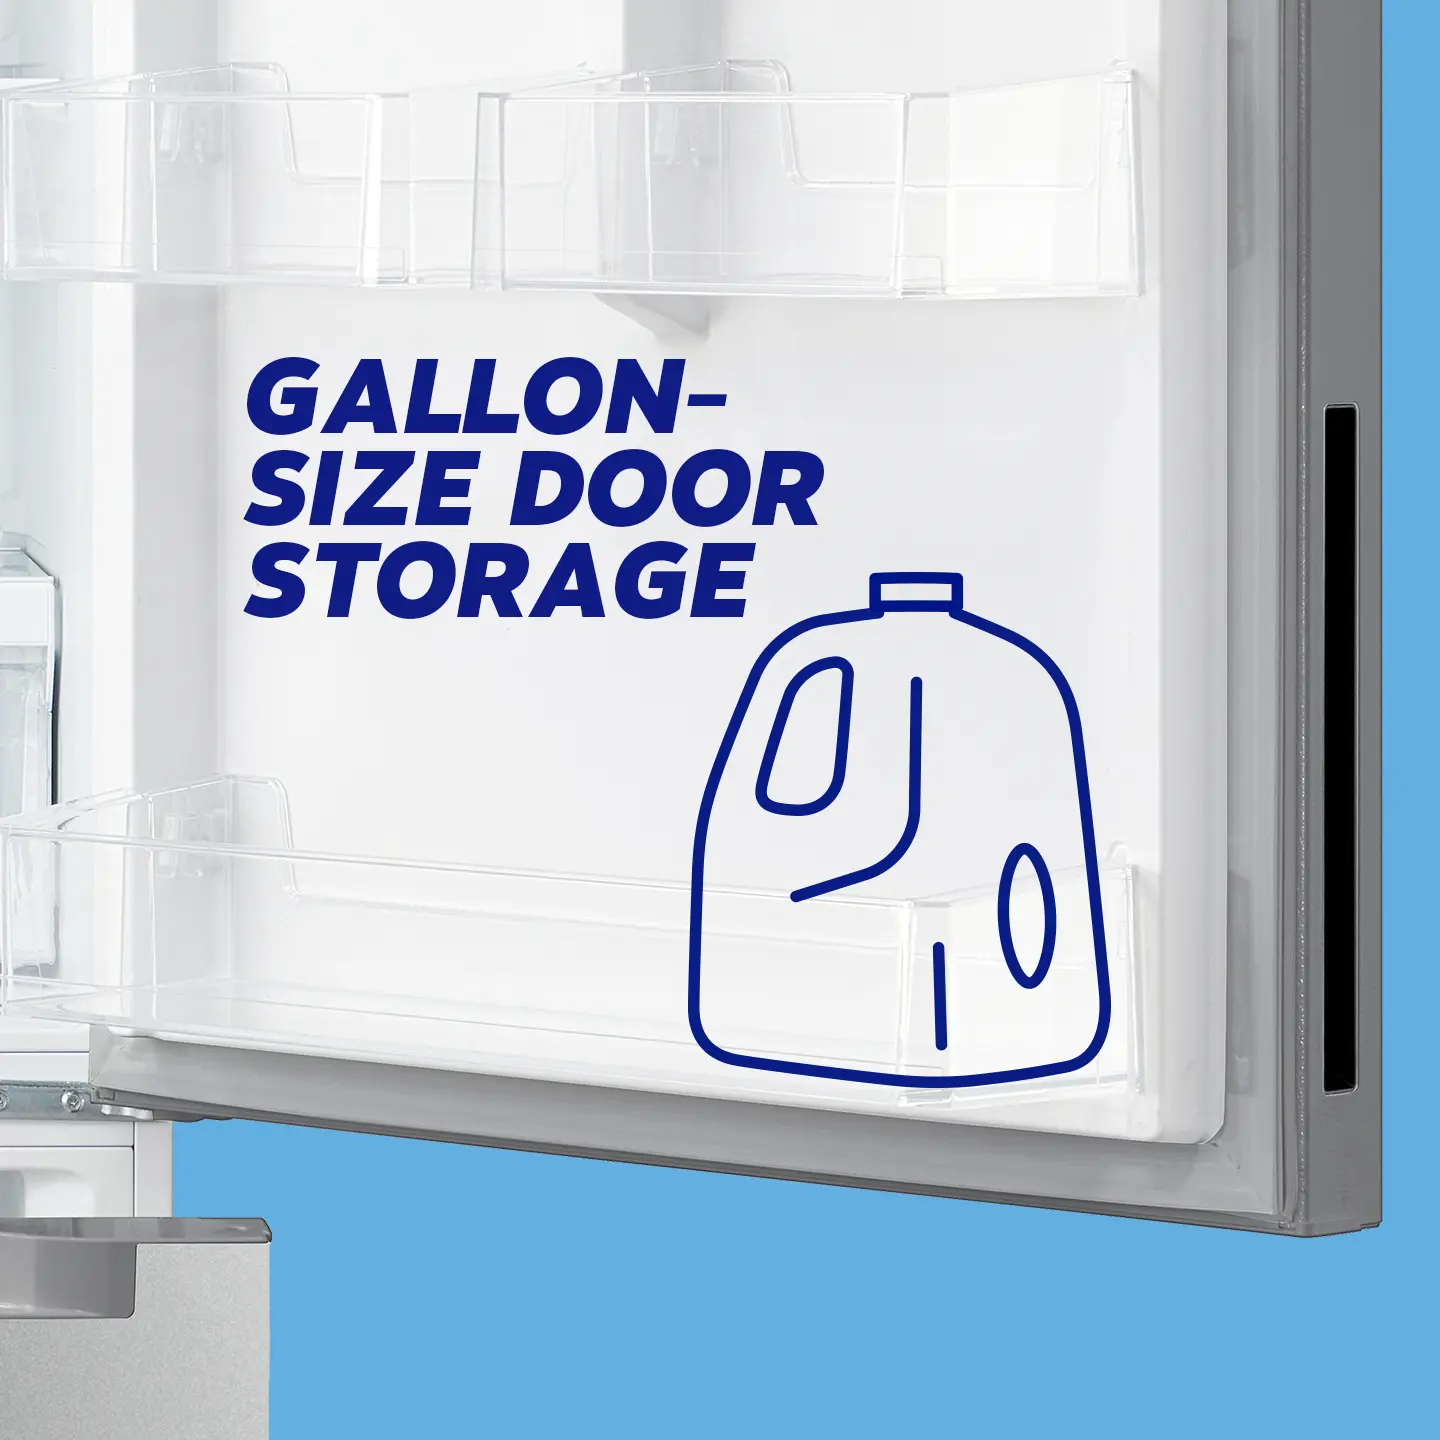 Gallon door storage